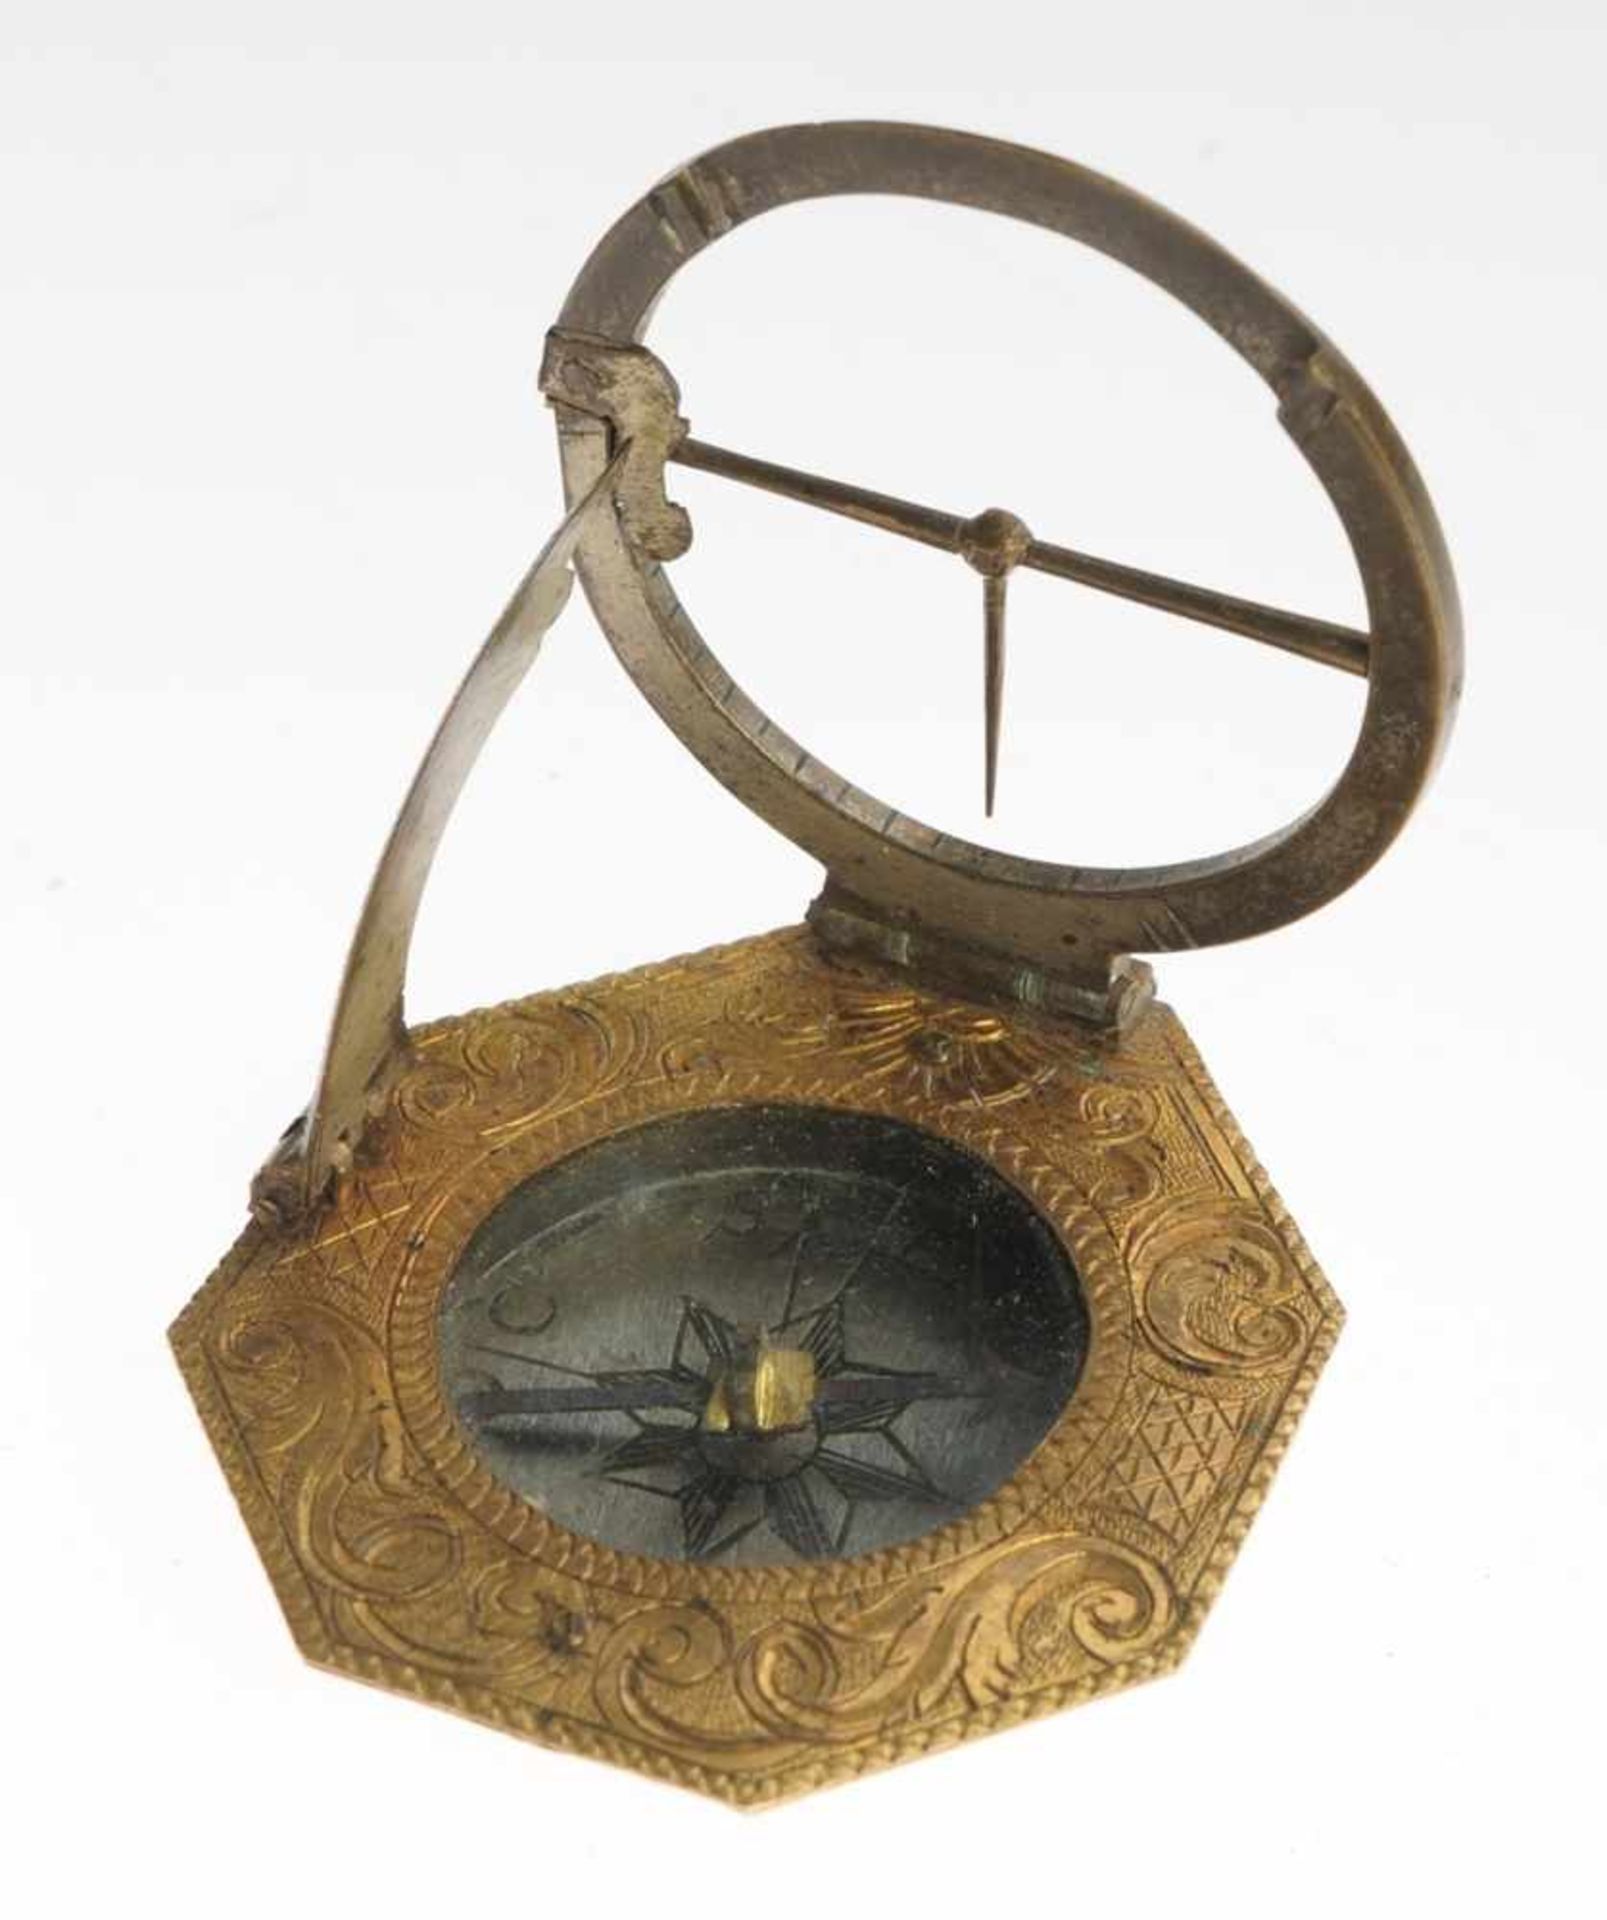 Äquatorialer KompassMessing. Oktogonales Gehäuse mit Kompass u. grav. Akanthusdekor. Stundenskala, - Bild 8 aus 9